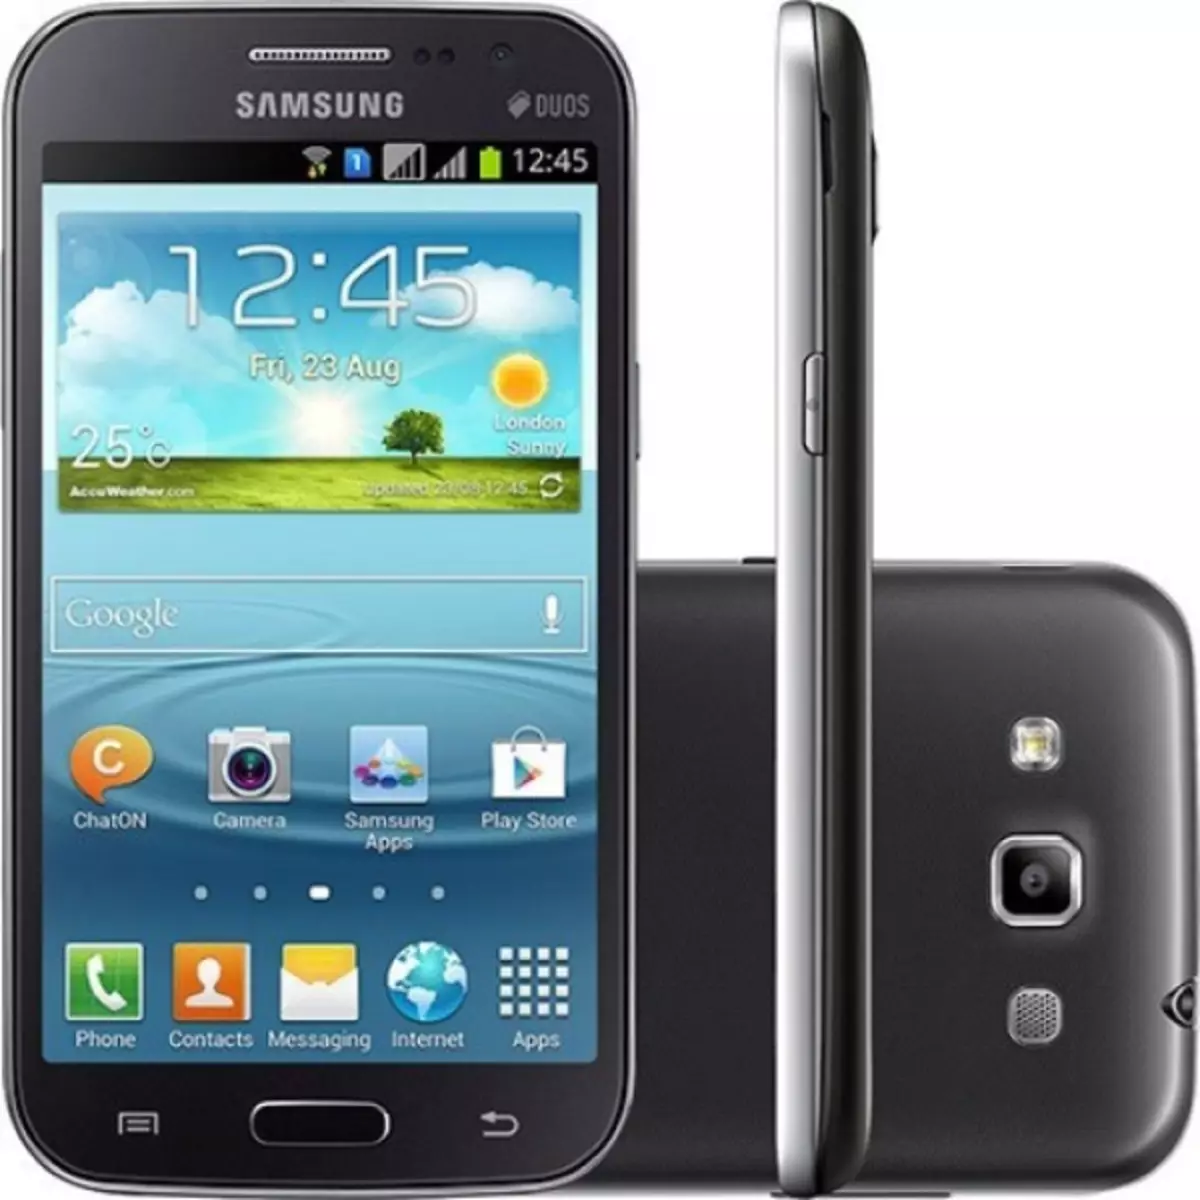 Samsung GT-I8552 Galaxy Irabazi Duos firmwarea modu desberdinetan